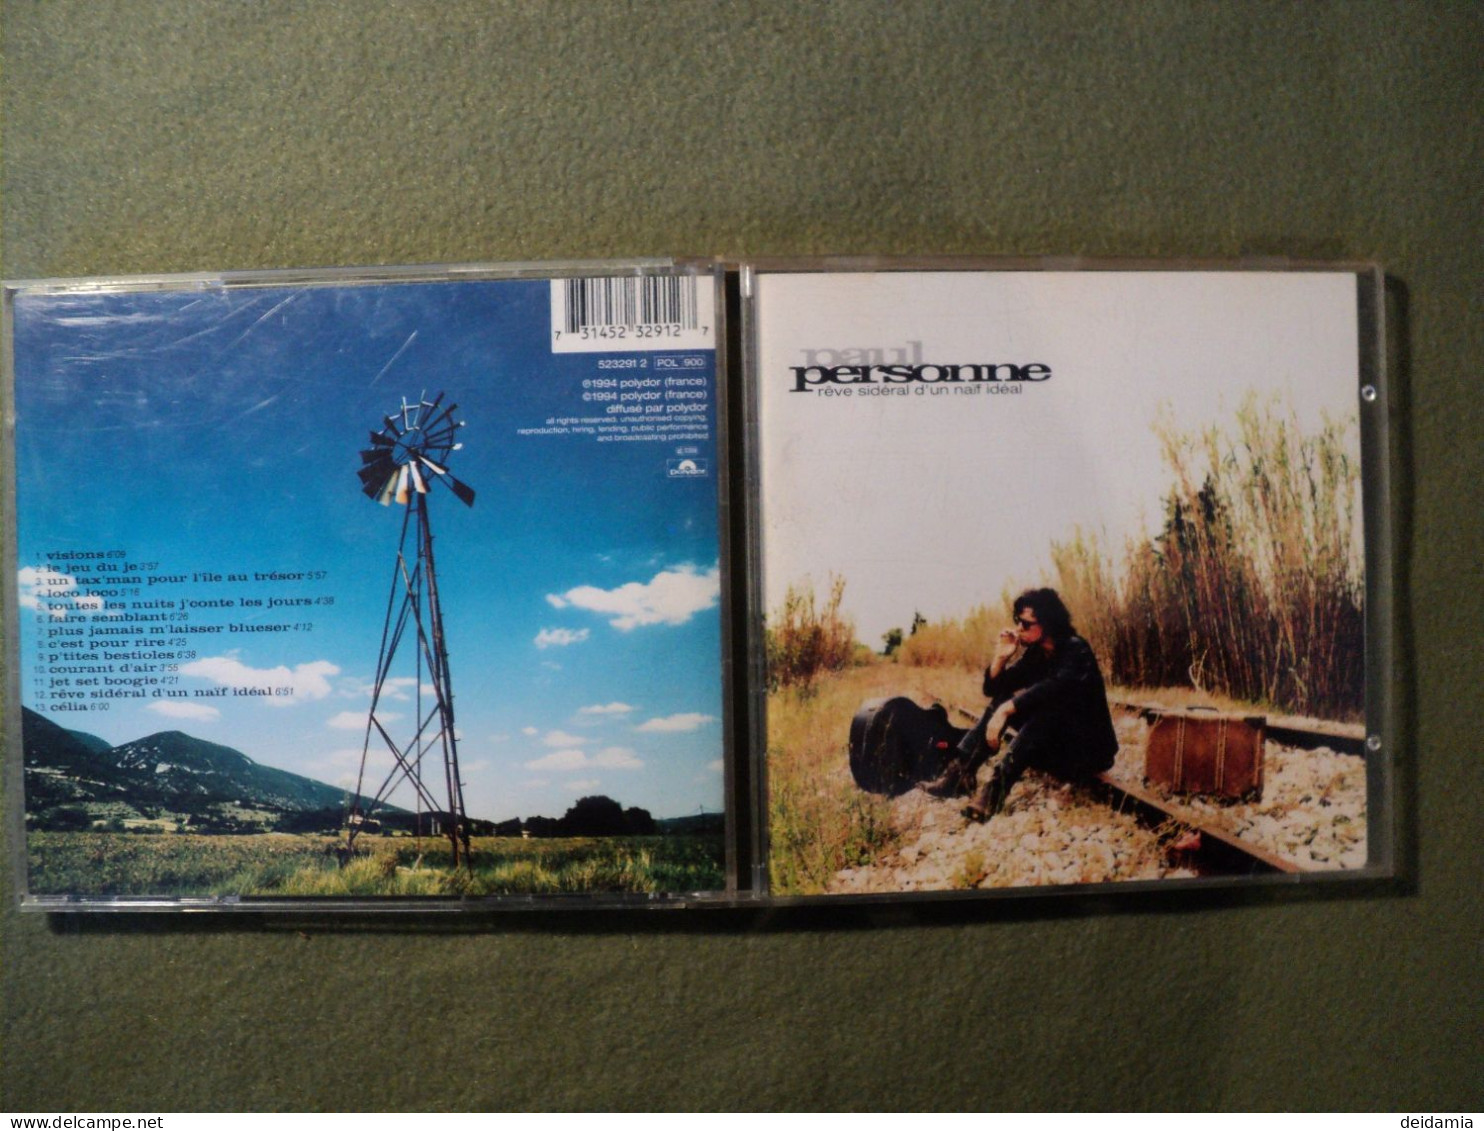 PAUL PERSONNE. CD 13 TITRES DE 1994. POLYDOR 523291 2 VISIONS / LE JEU DU JEU / UN TAX MAN POUR L ILE AU TRESOR / LOCO L - Autres - Musique Française